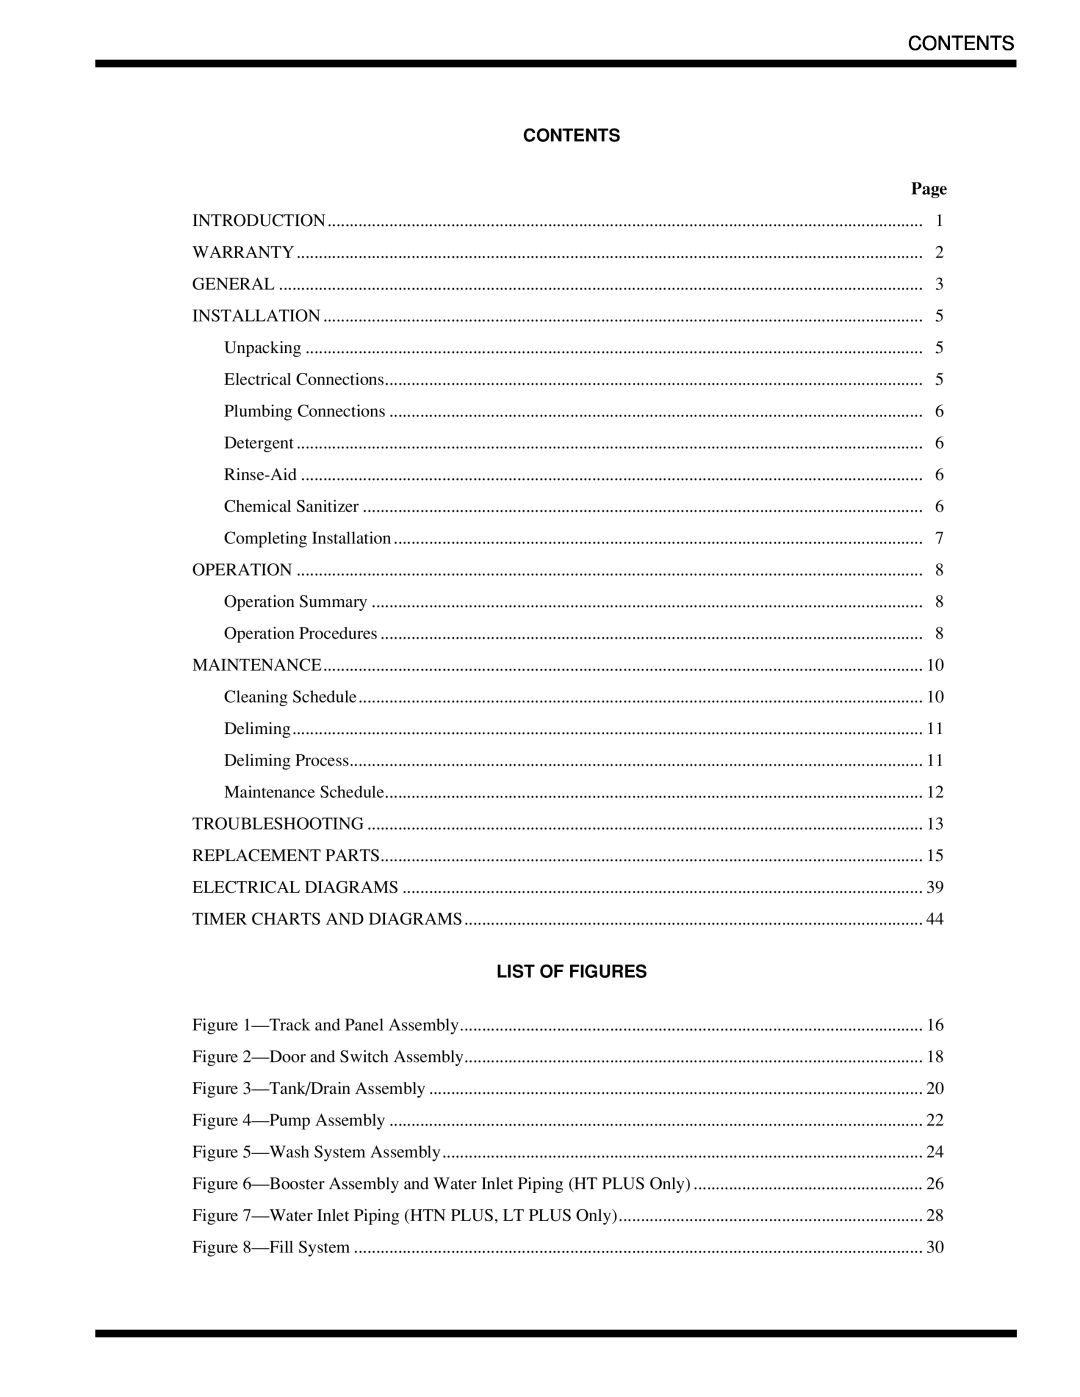 Moyer Diebel 401-HTM2 PLUS, 401-HTNM2 PLUS, 401-LTM2 PLUS technical manual Contents, List Of Figures 